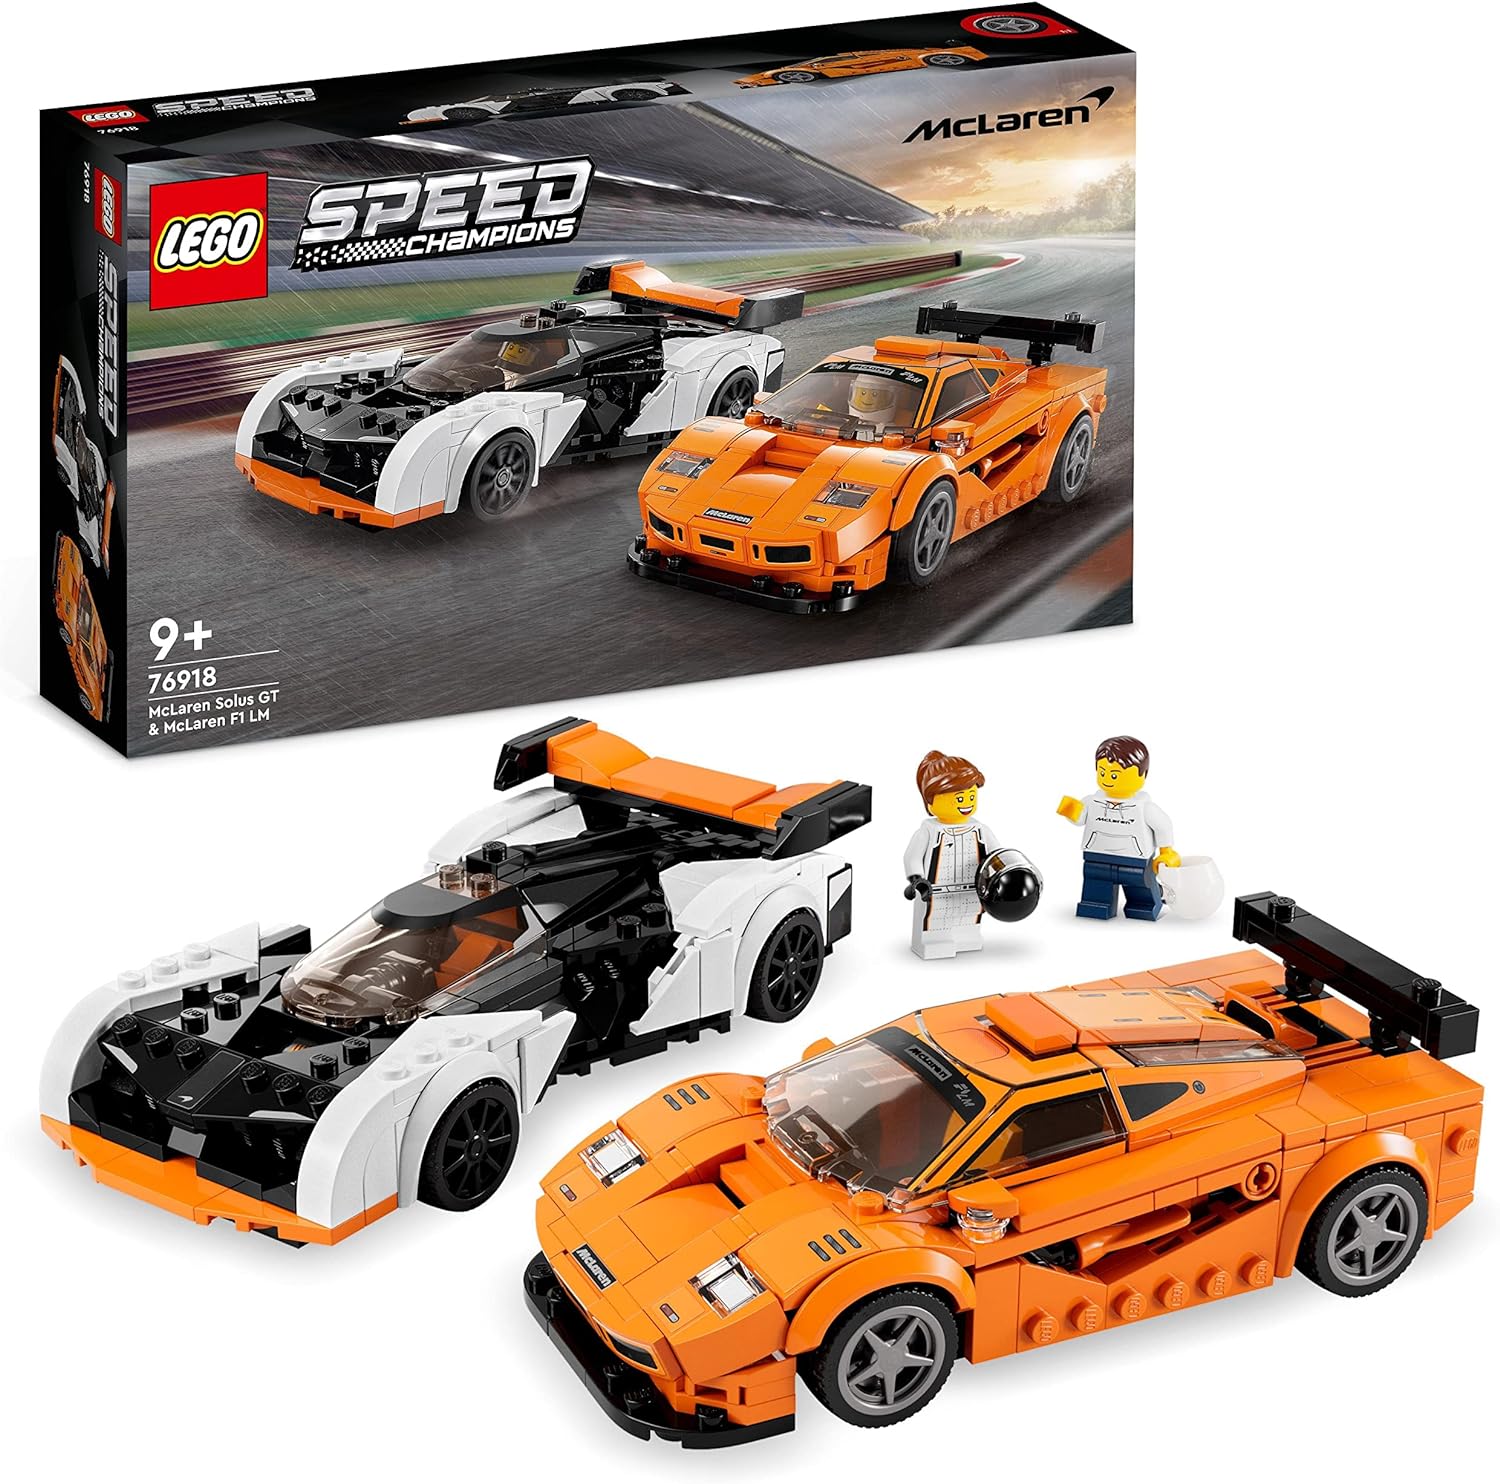 Lego 76918 McLaren Solus GT & McLaren